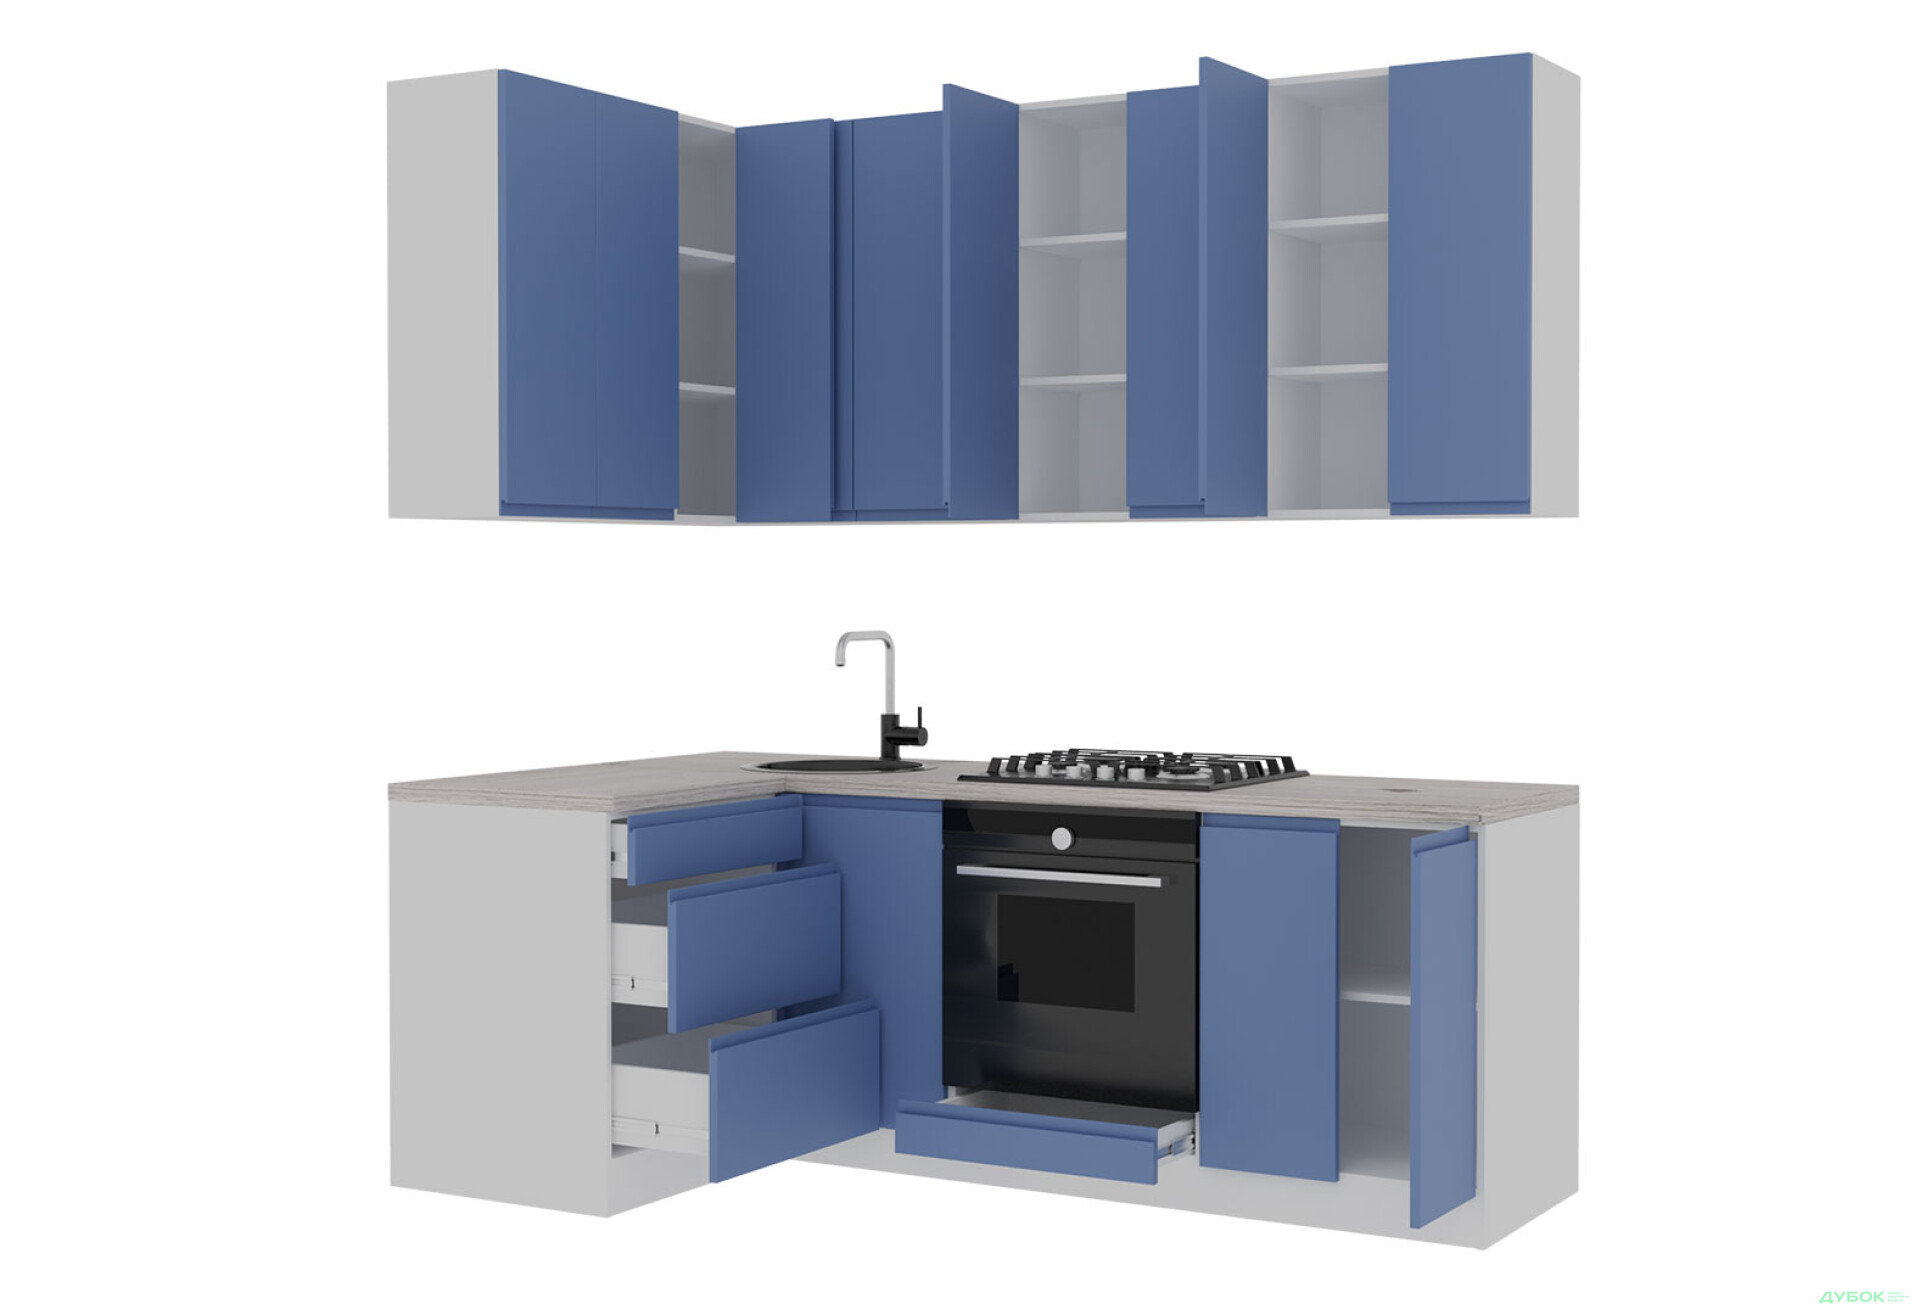 Фото 3 - Кухня VIP-master Інтерно Люкс / Interno Luxe 2.2x1.2 м, білий / синій мат